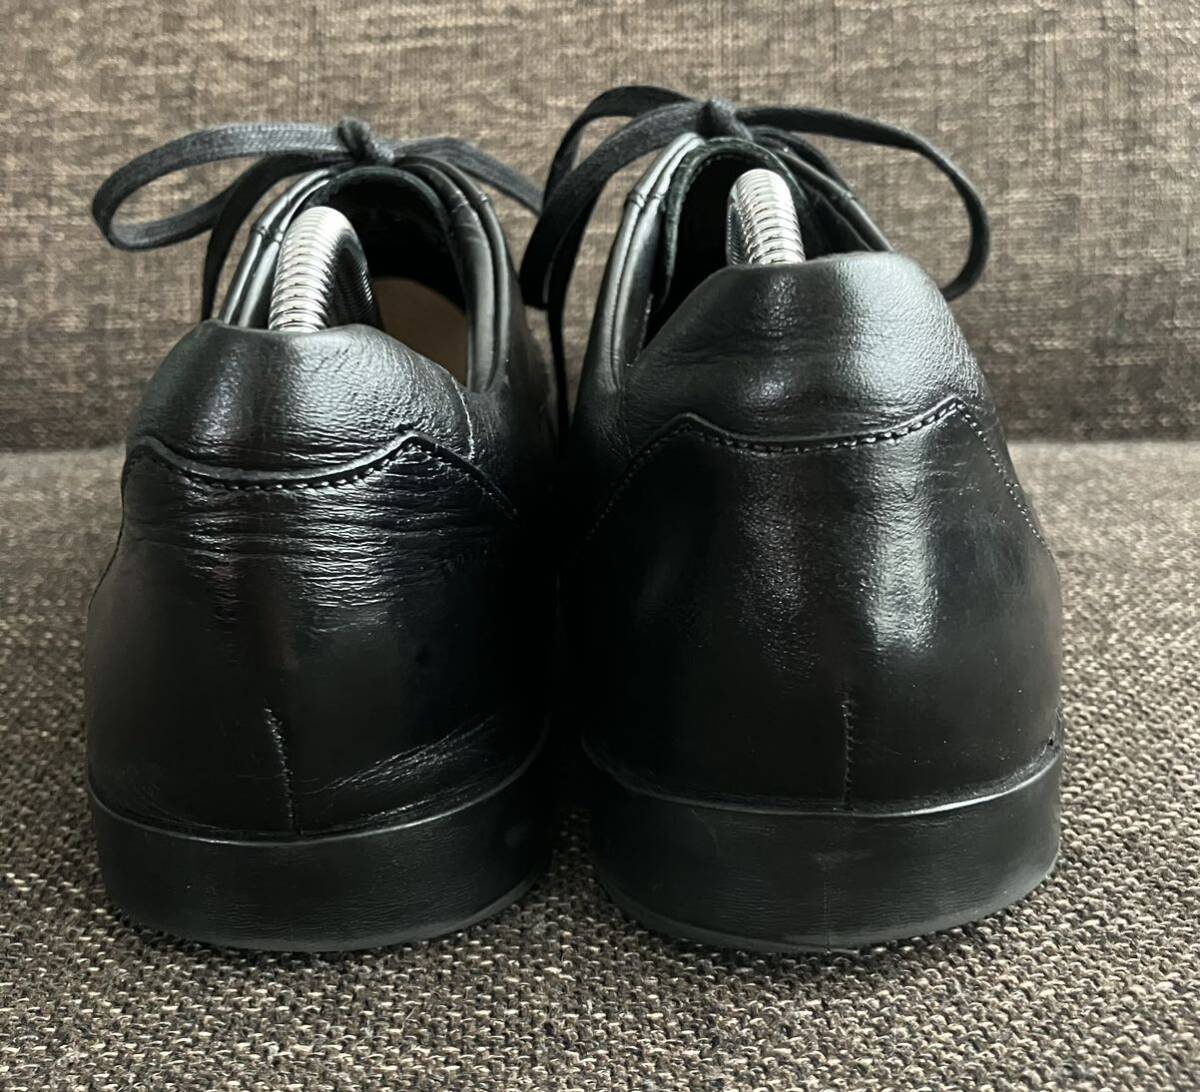 [ снят с производства ] Clarks серый men to гонки кожа обувь кожа обувь UK7 25.5cm